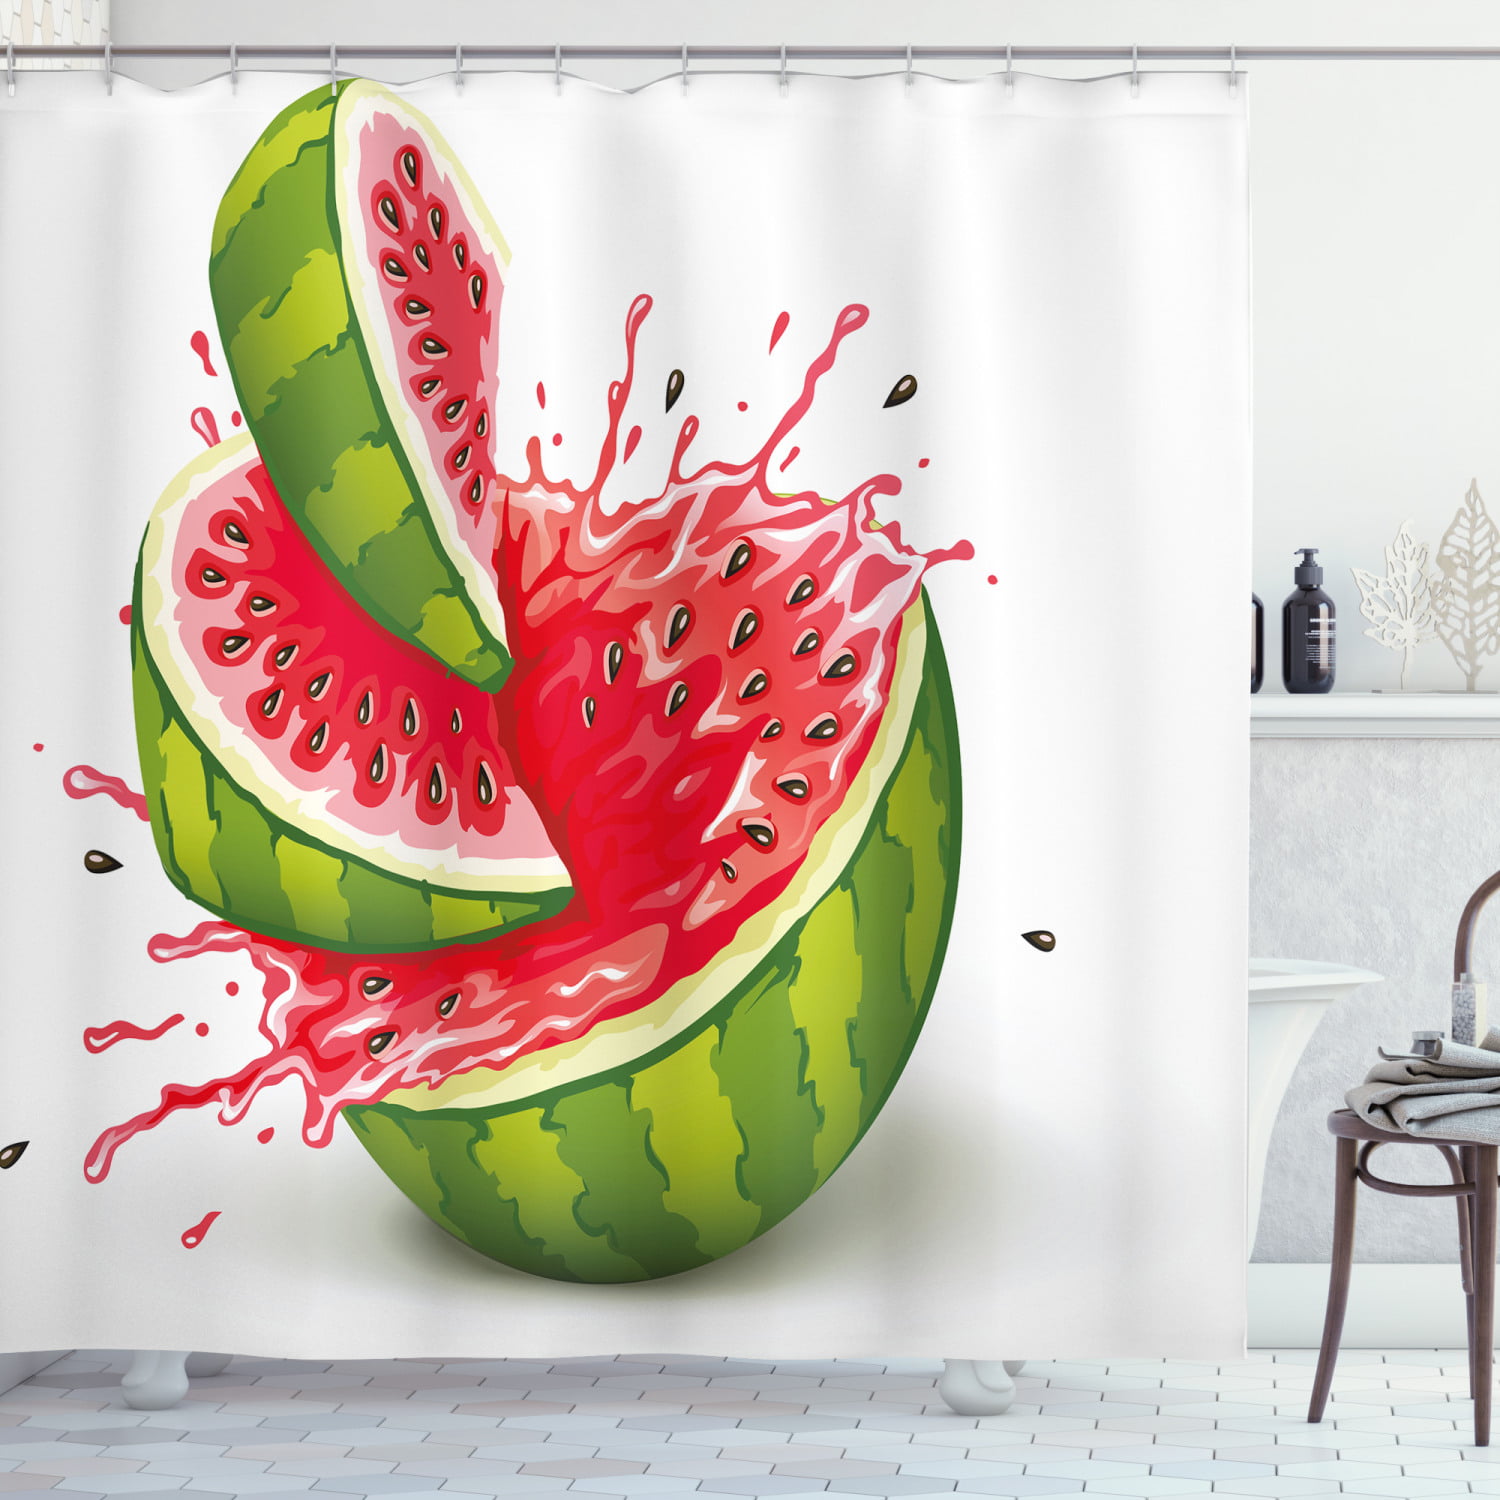 Watermelon Bathroom Decor Shower Curtain Waterproof Fabric w/12 Hooks 71*71in 